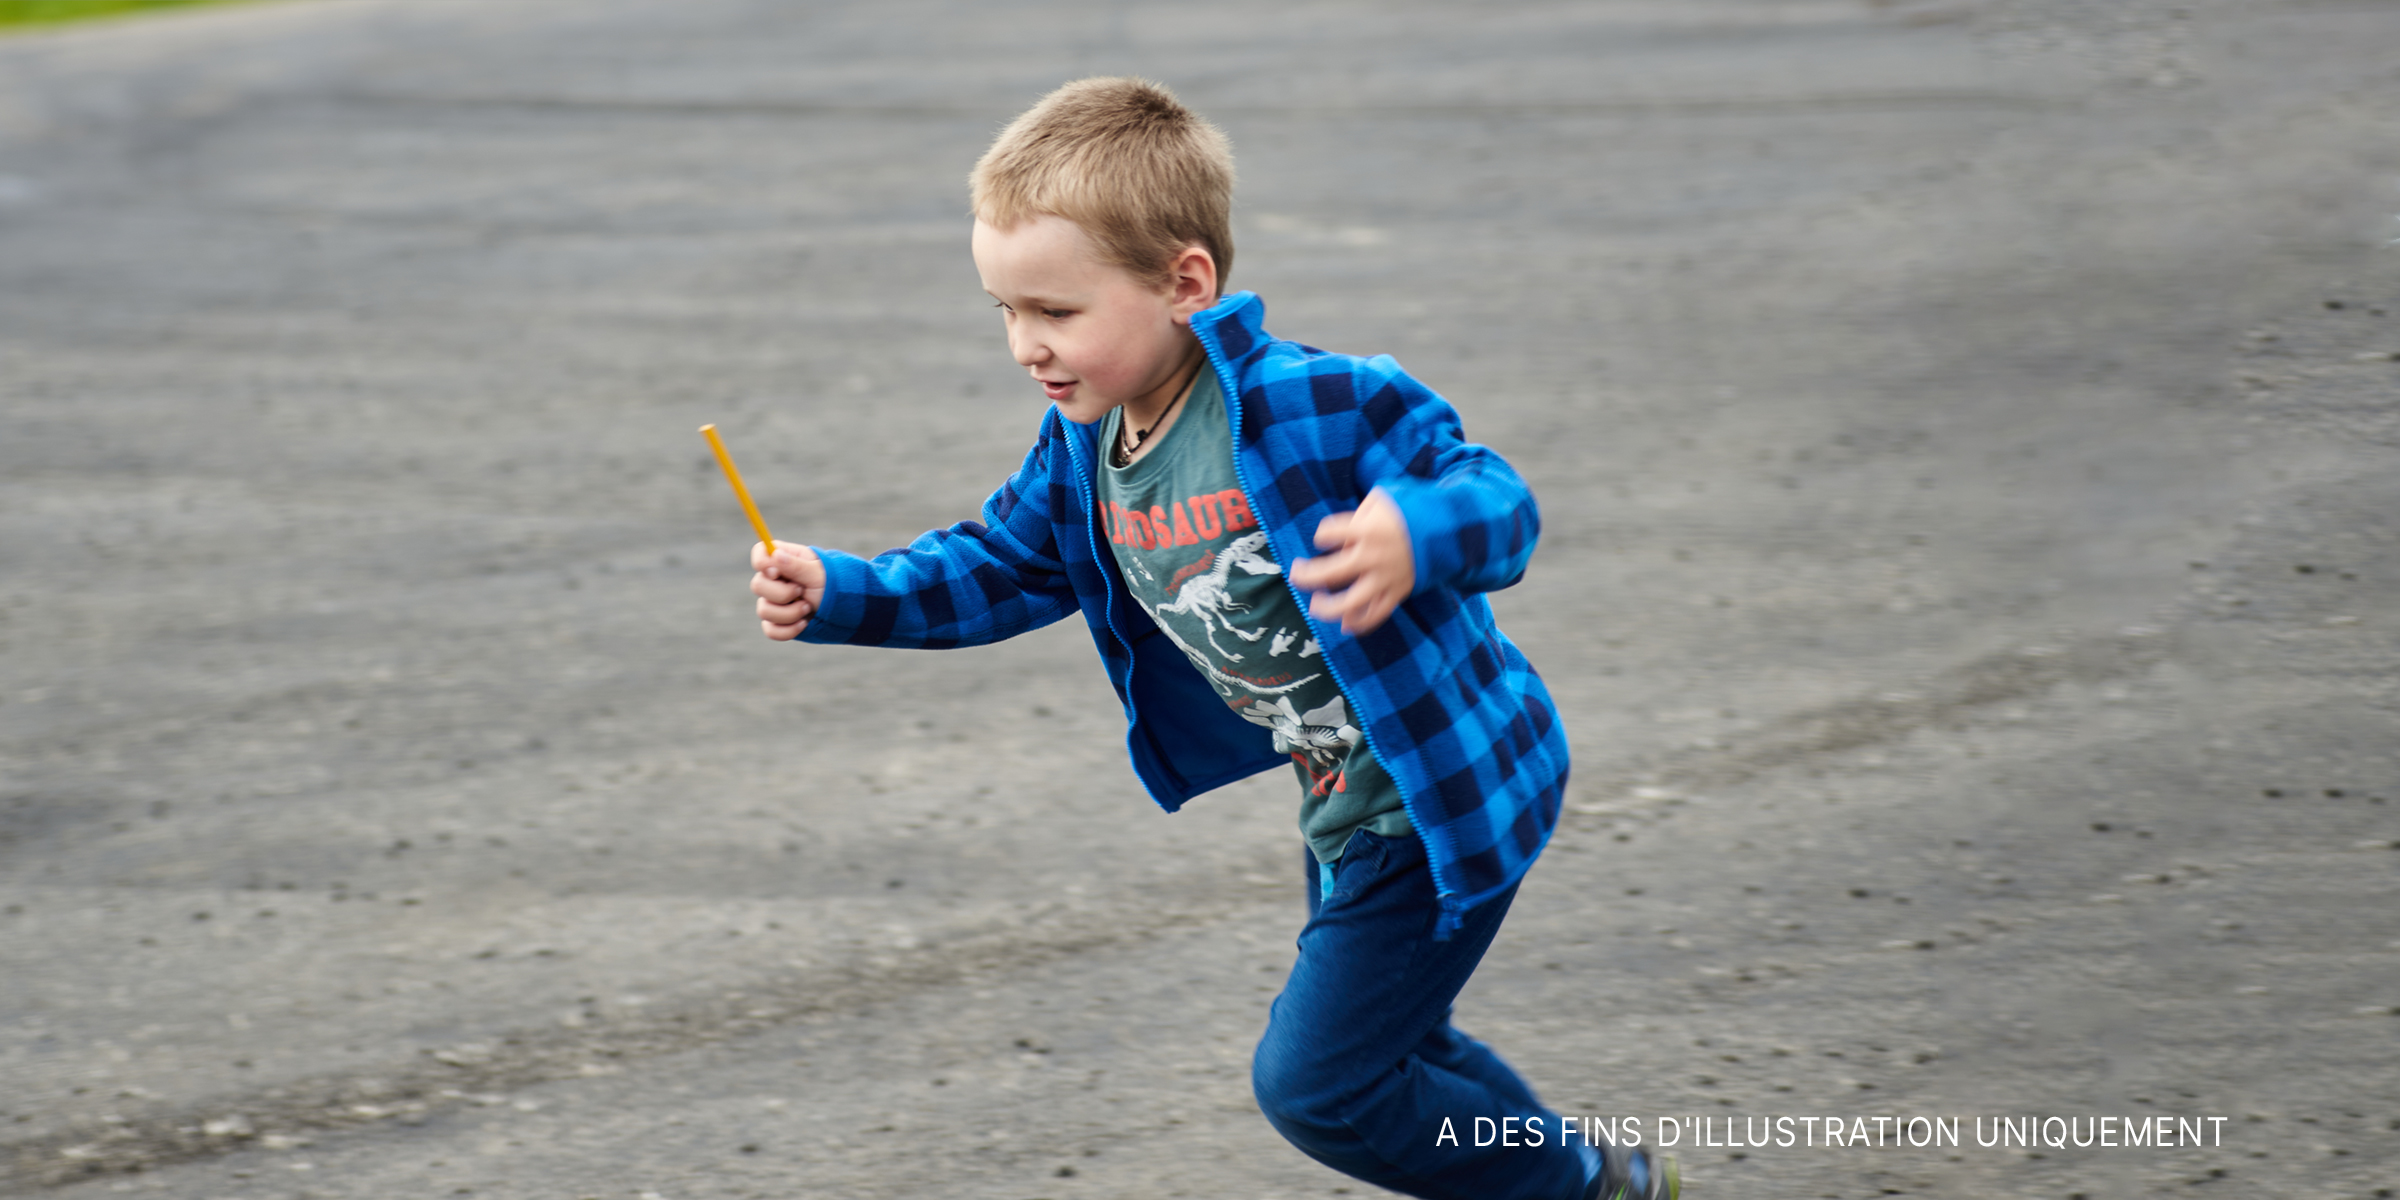 Un petit garçon qui court sur la route | Source : Shutterstock